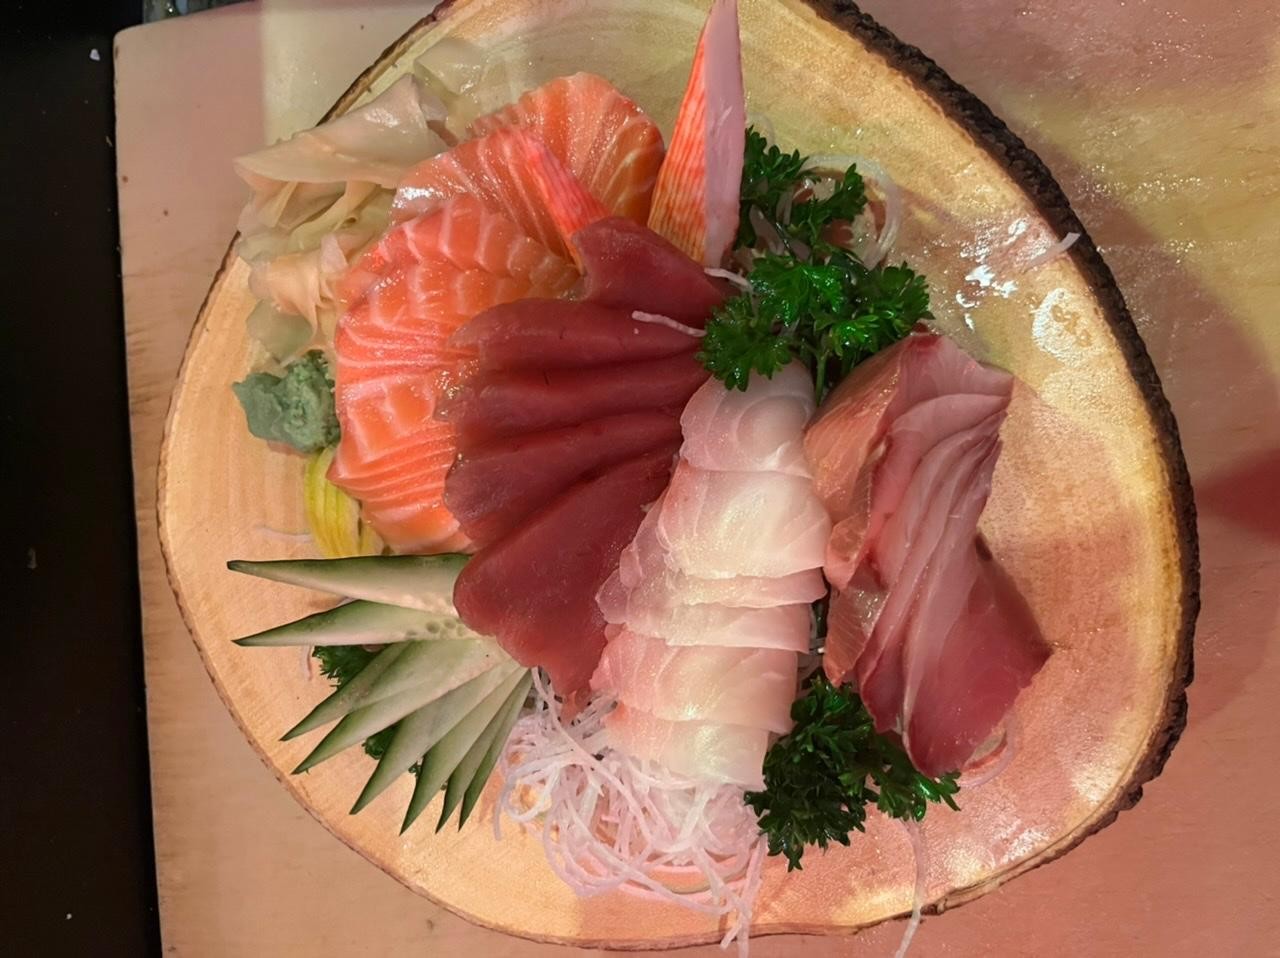 Shogun's Sashimi Plate